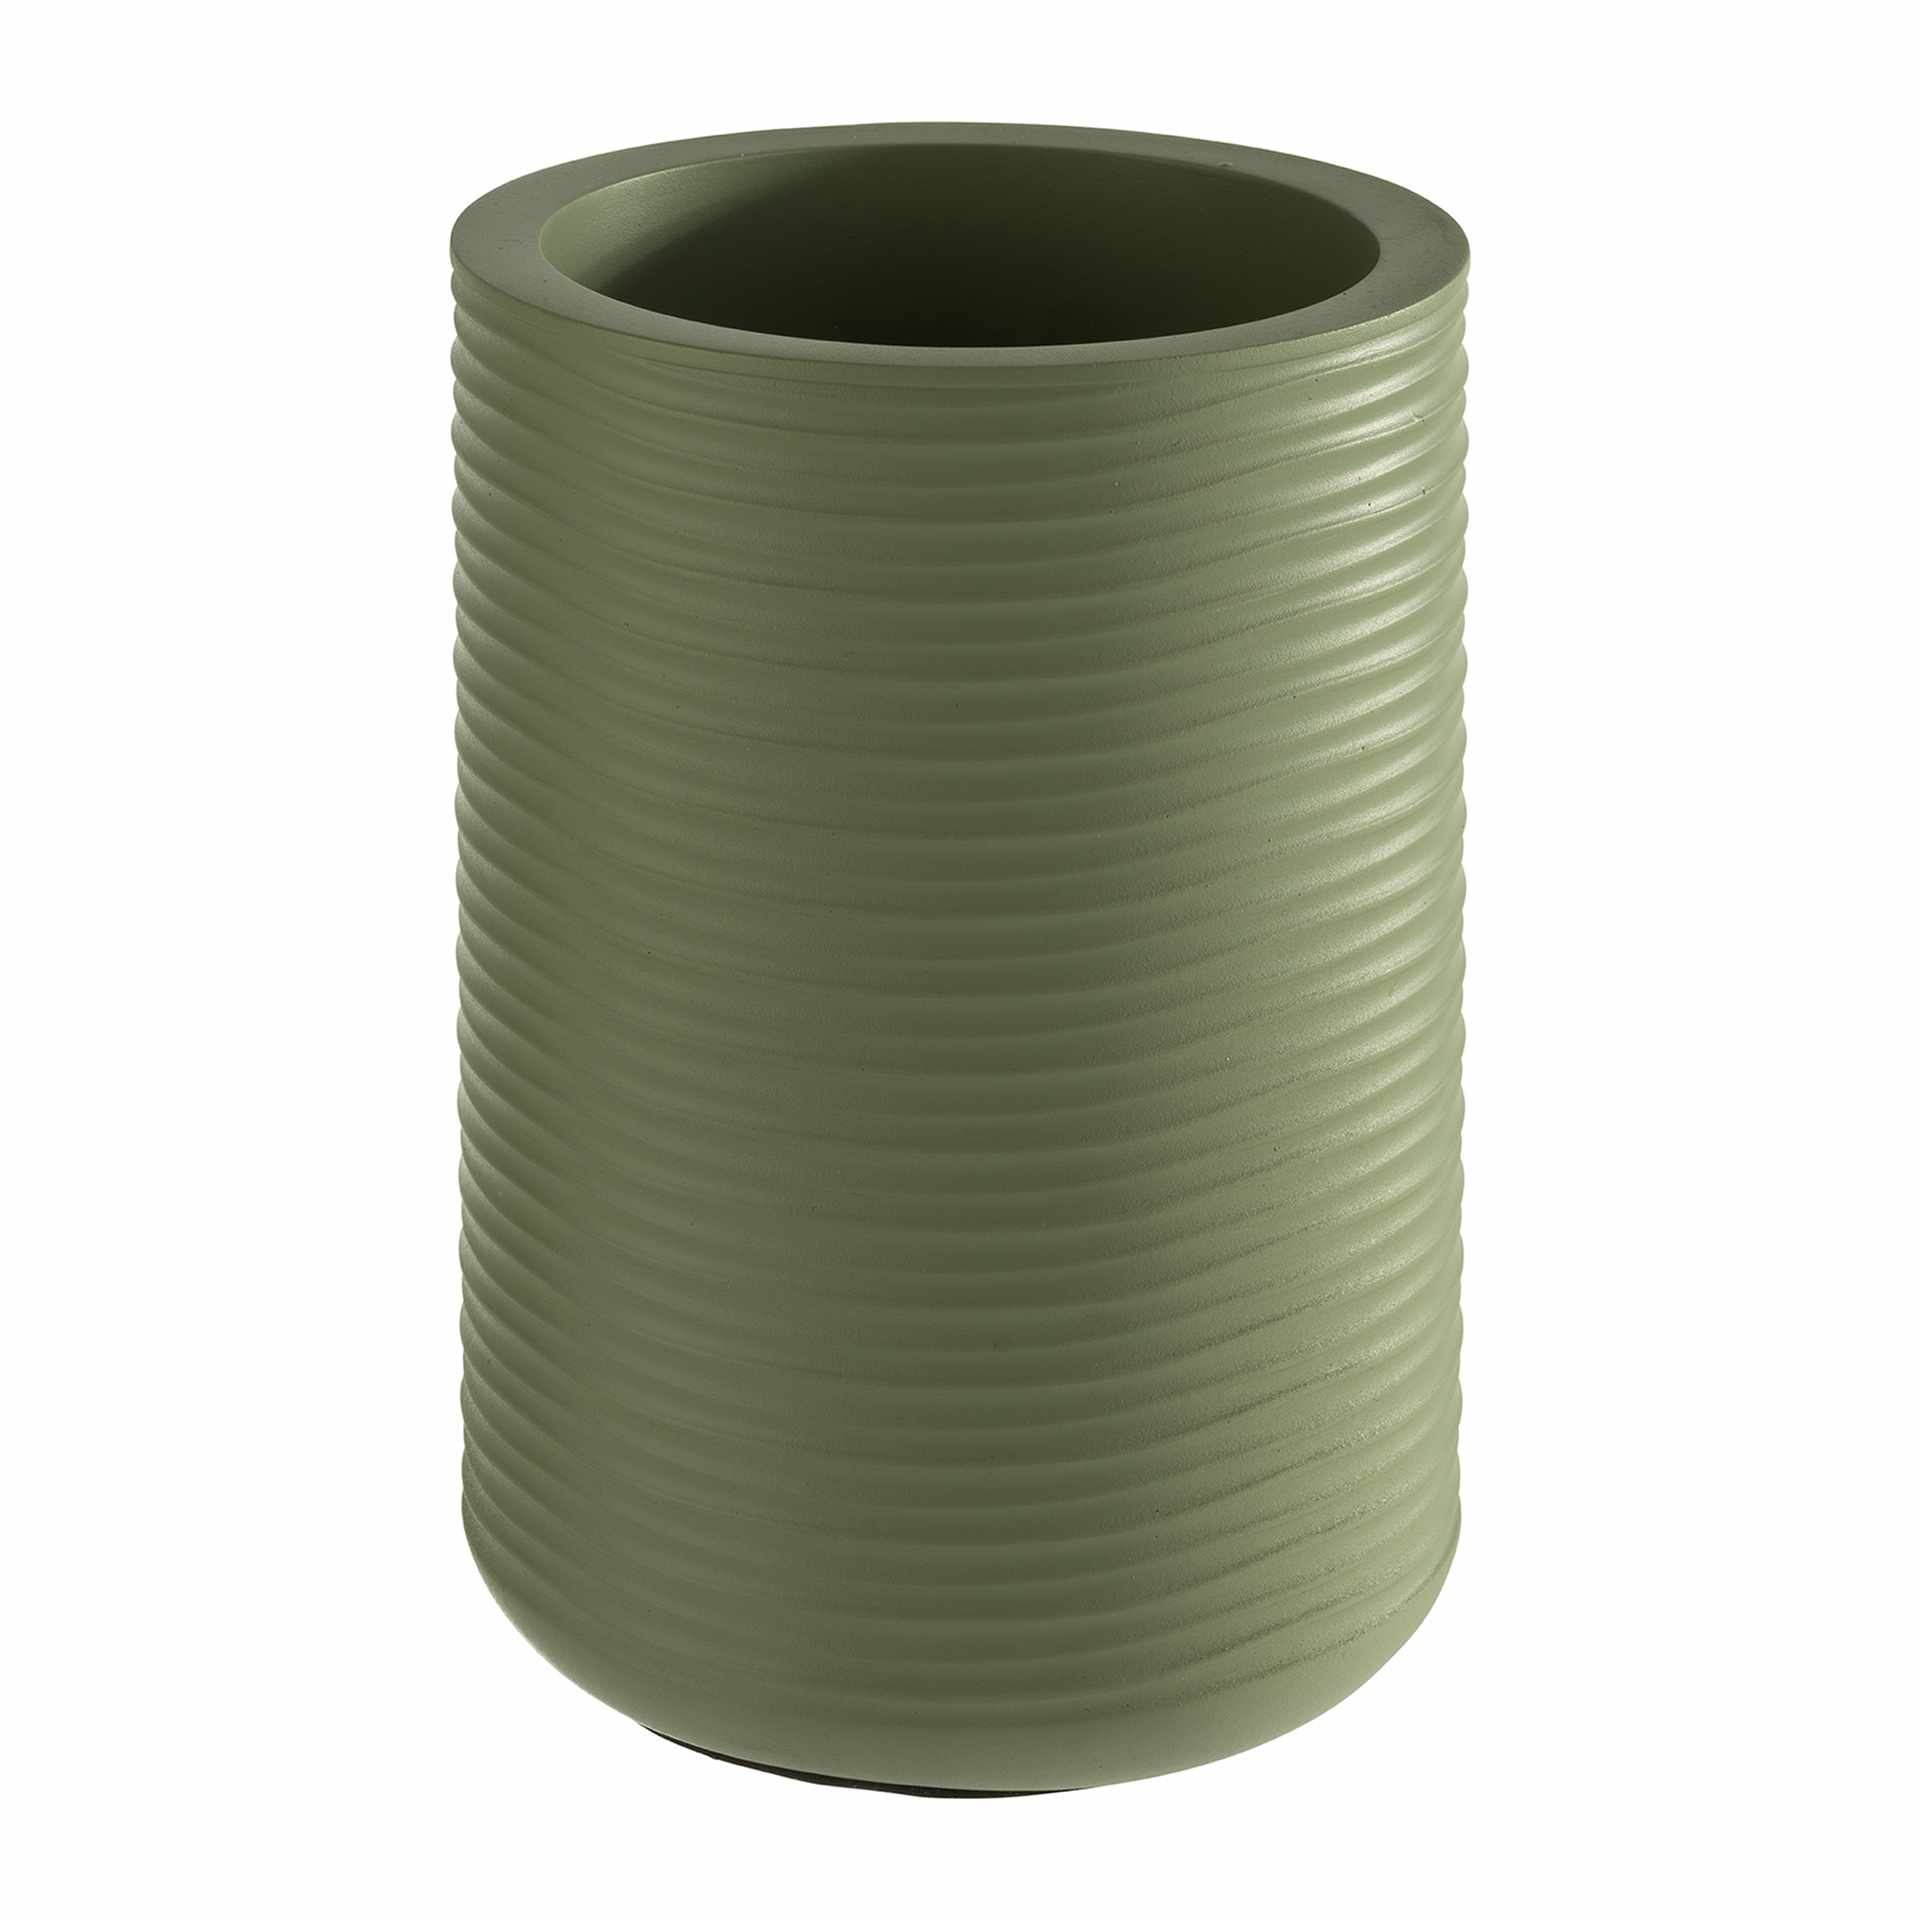 Flaschenkühler - Serie Element - grün - rund - Höhe 19,0 cm - Ø (außen) 13 cm - Beton - 36124-B